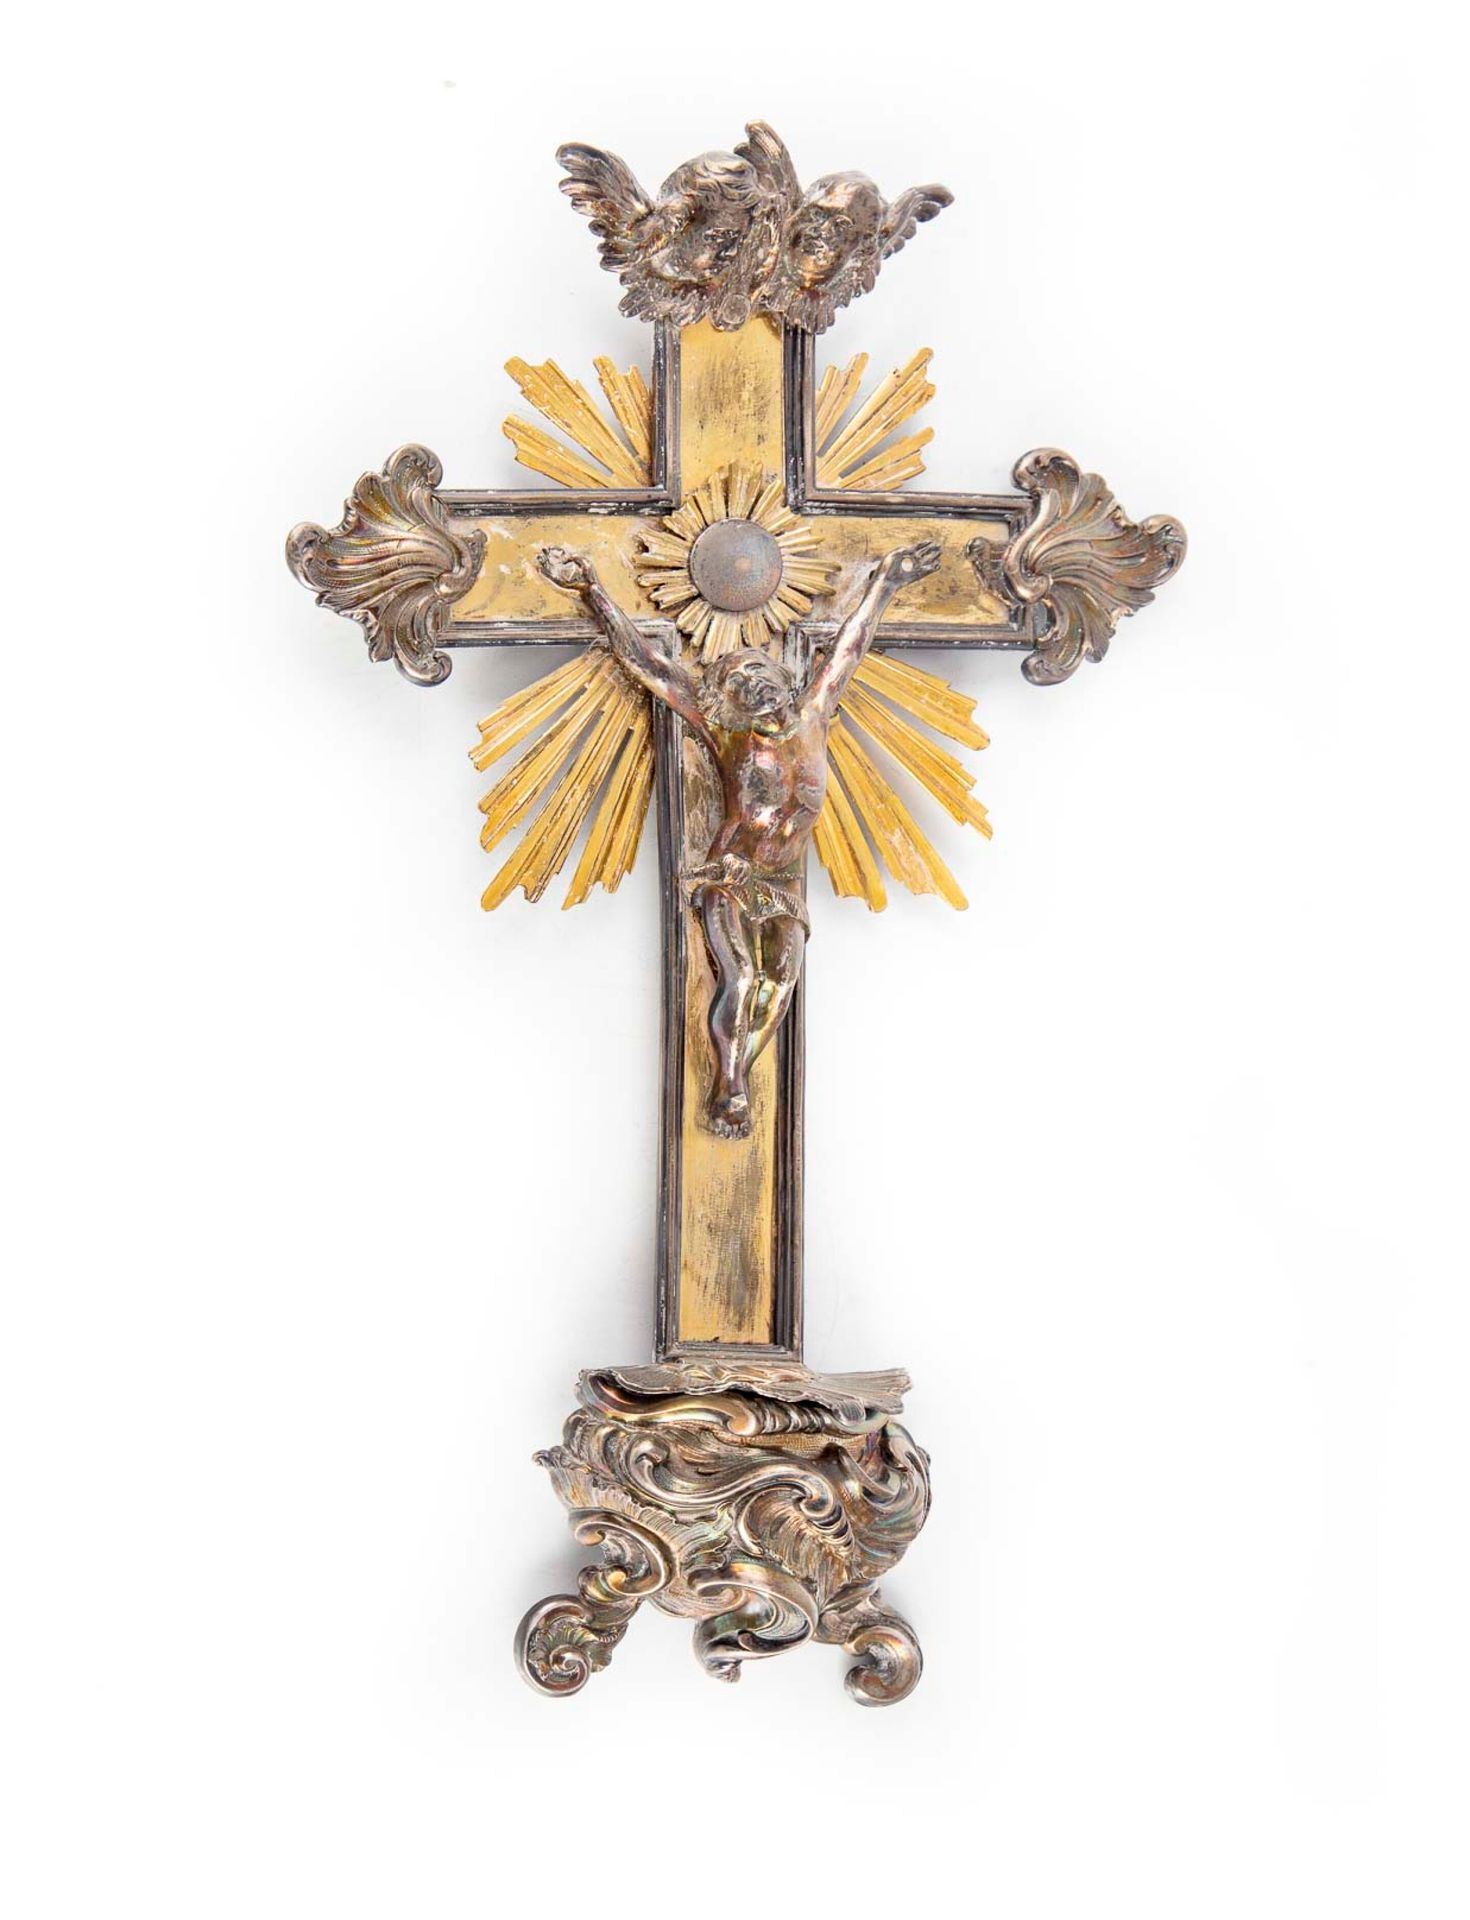 Null 银质和铜质的十字架

19世纪

H.37厘米